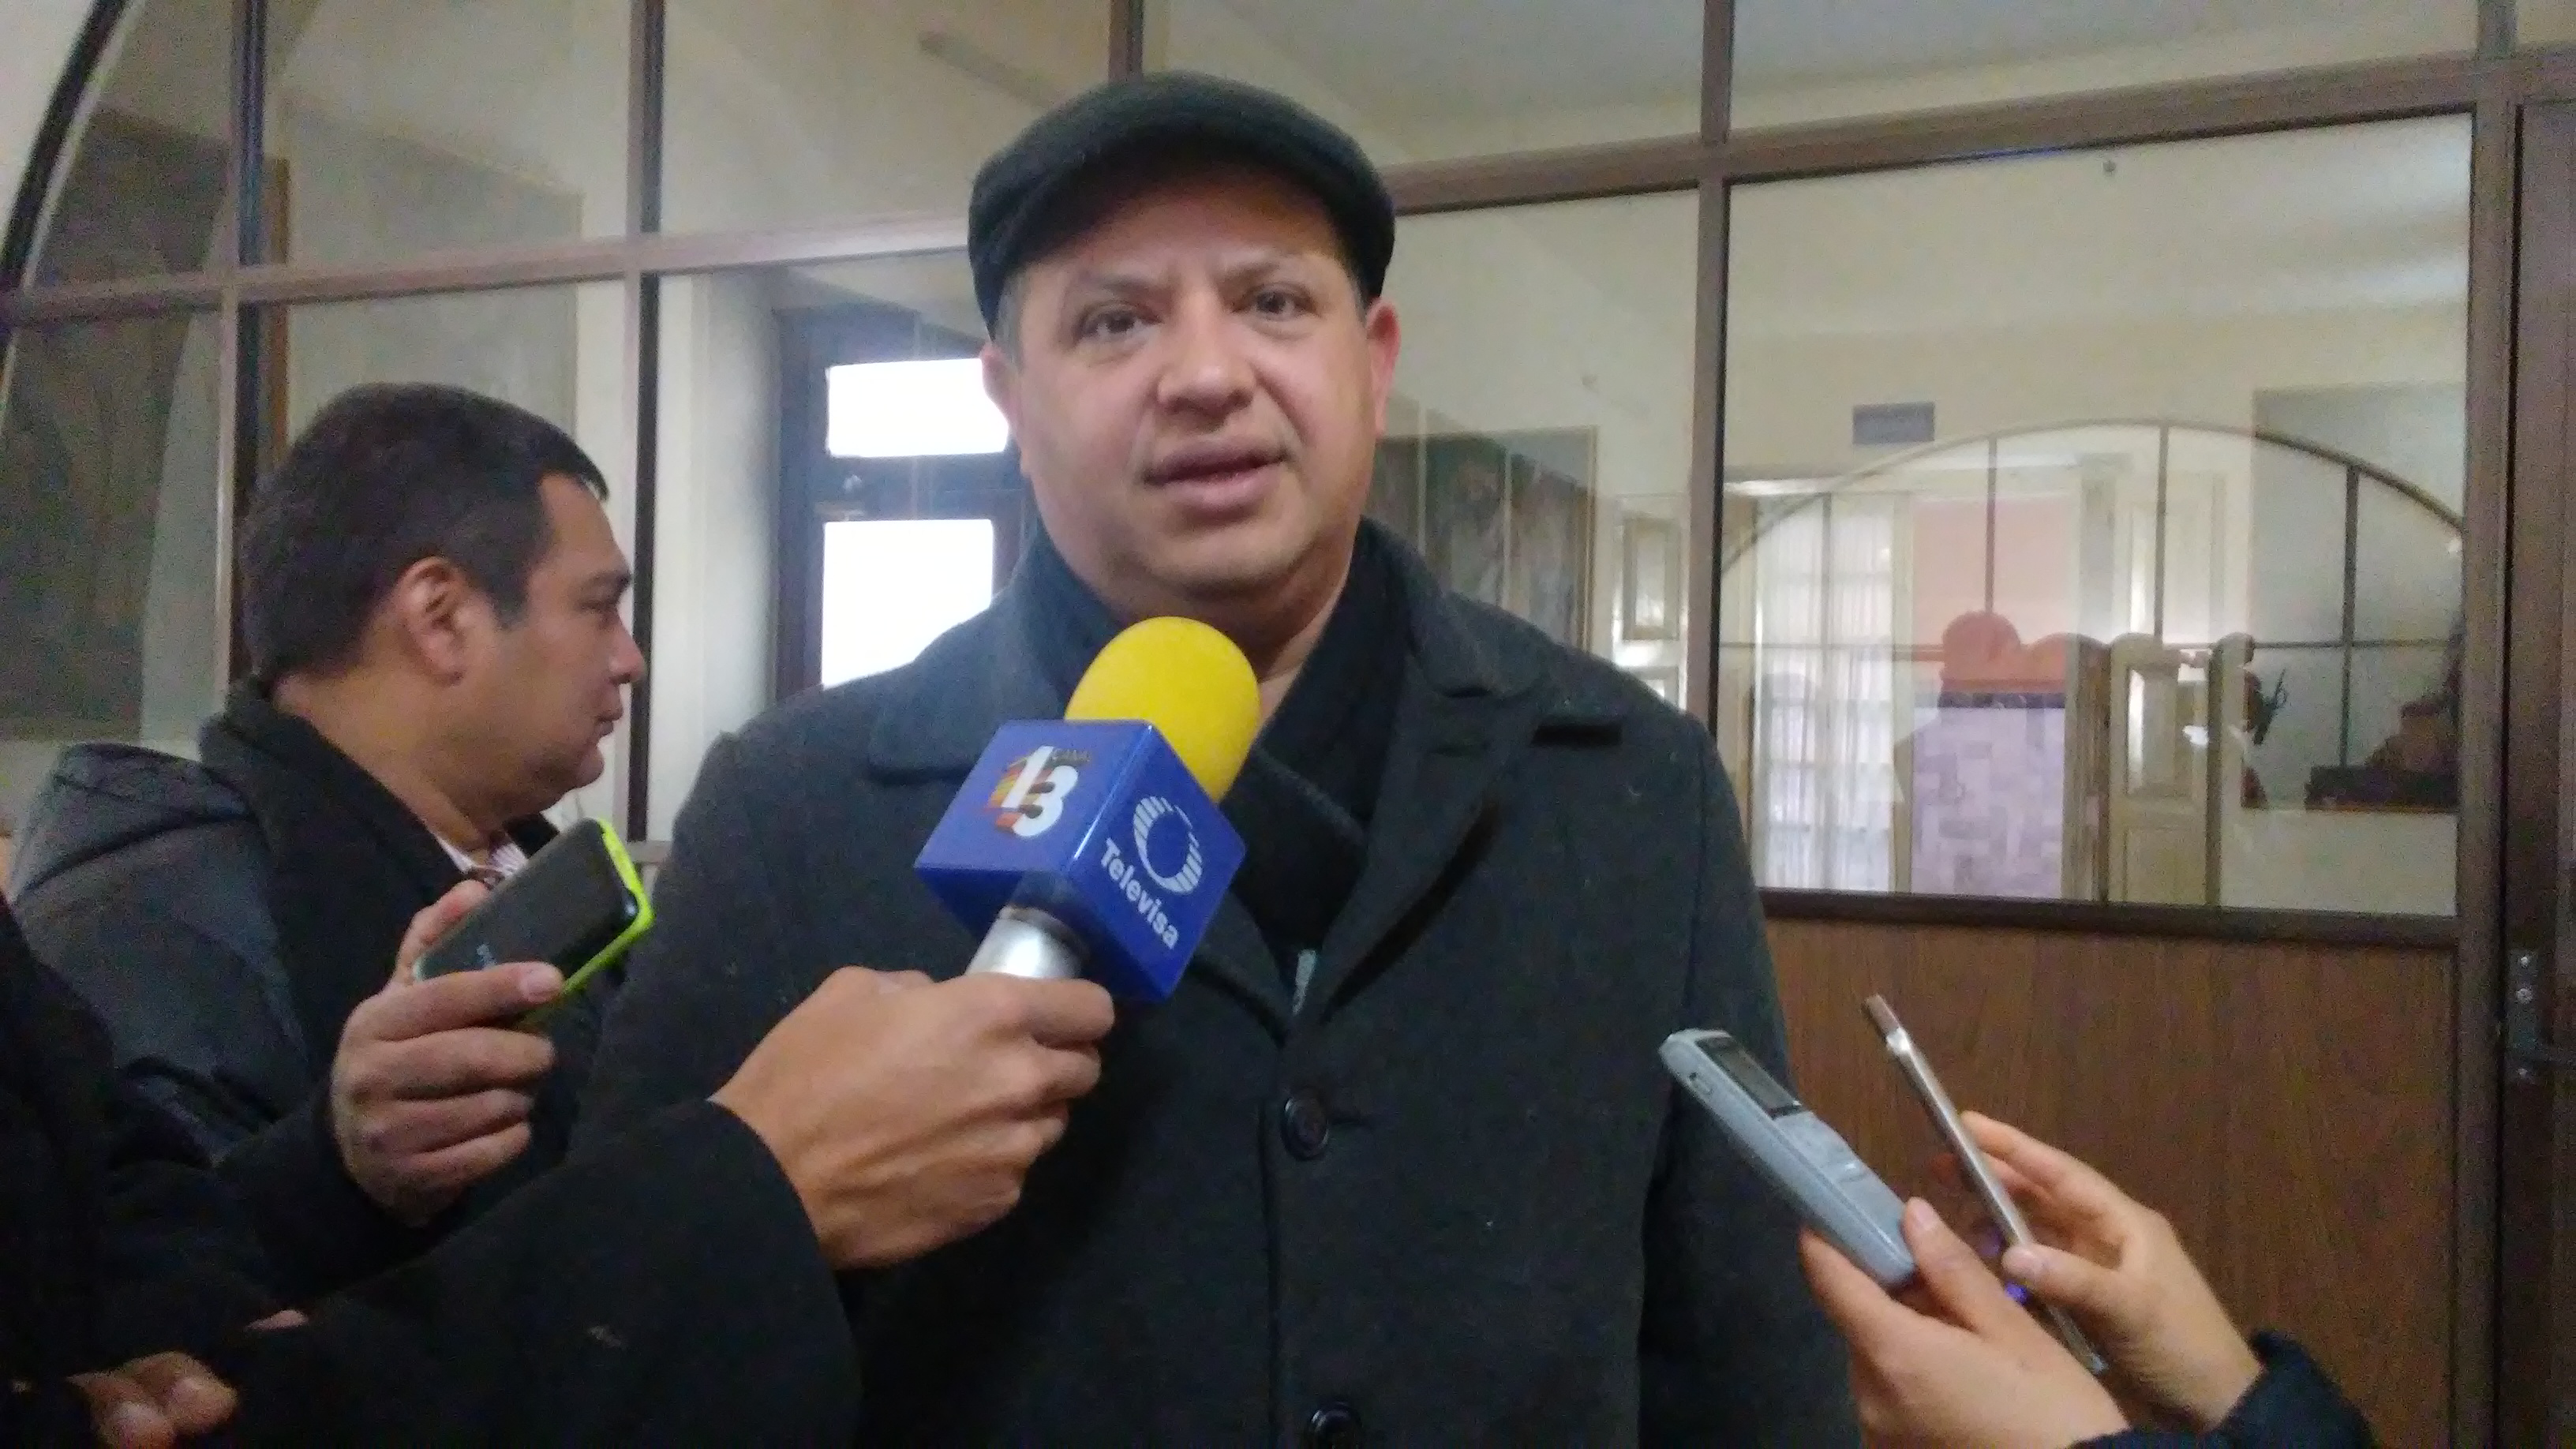 Regalos a sanjuaneros, actos anticipados de campaña: Priego Rivera